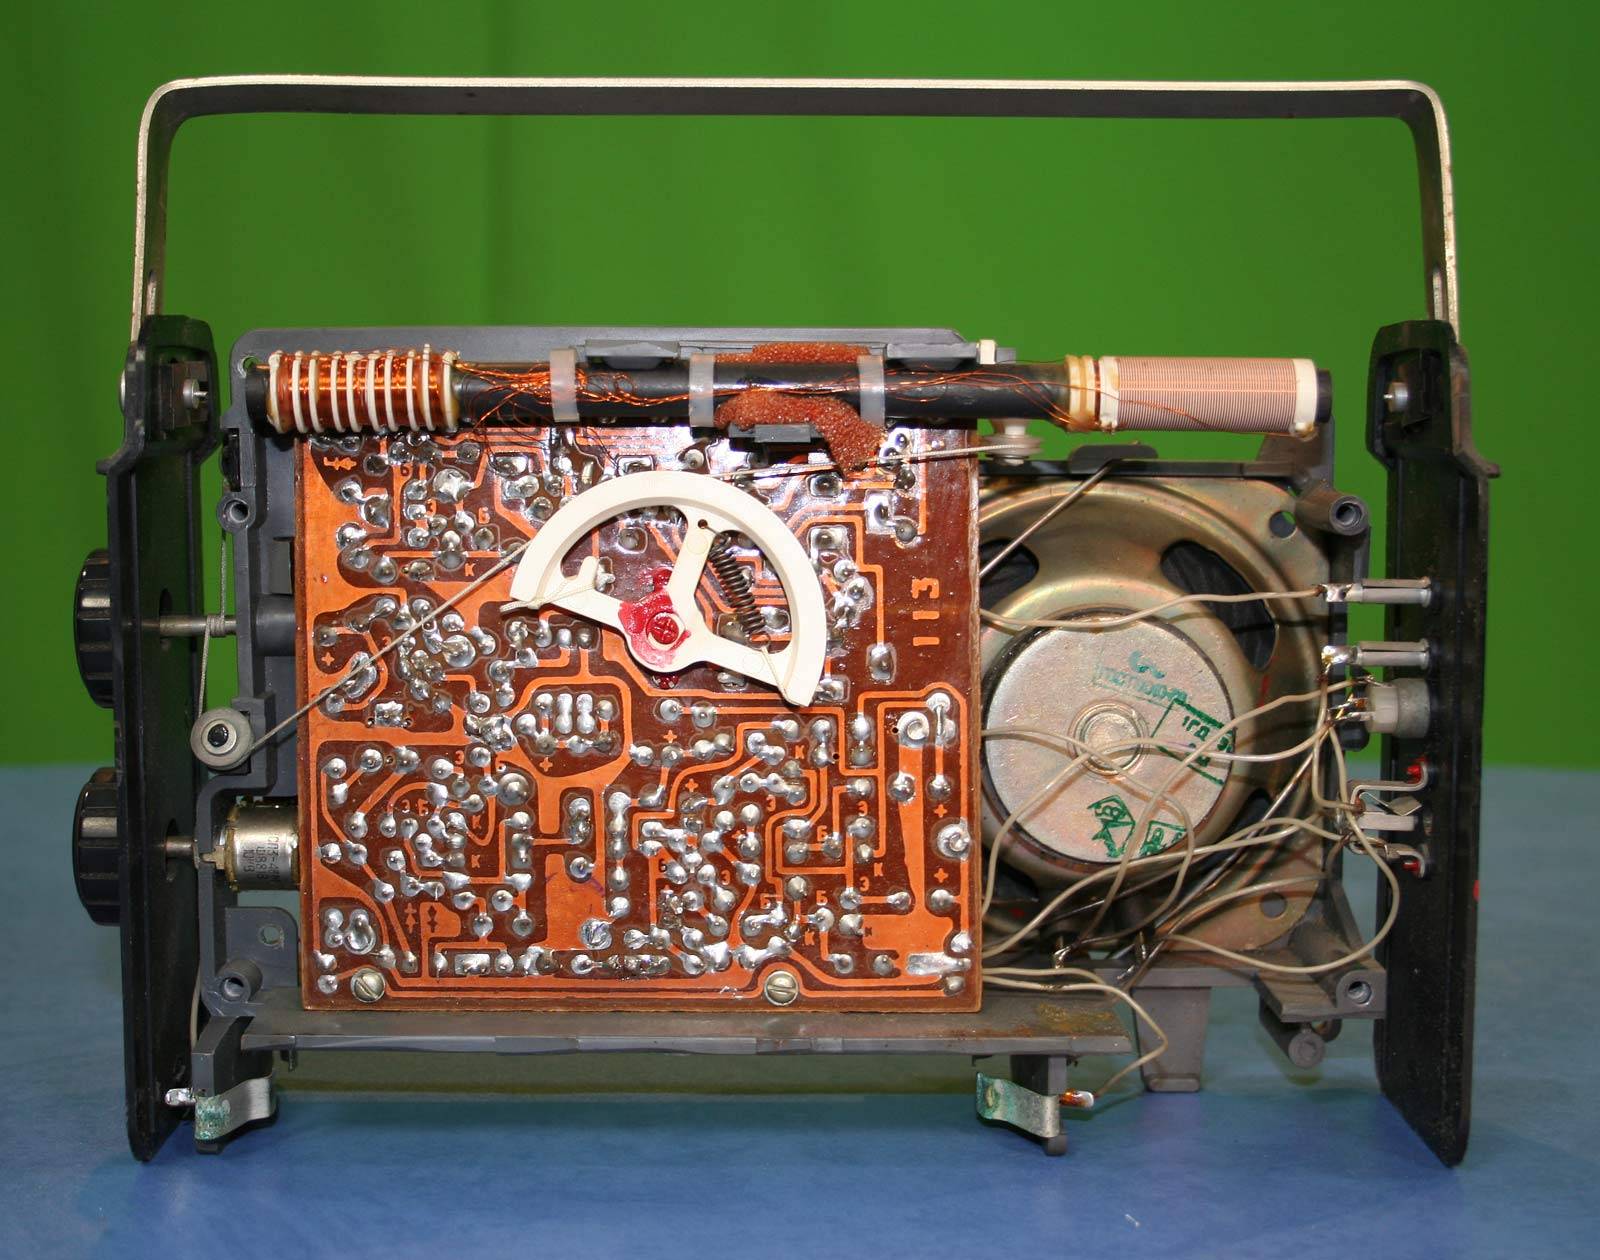 Первый радиоприемник, напечатанный на 3d-принтере, и собранный своими руками: радио с антенной, которое действительно работает